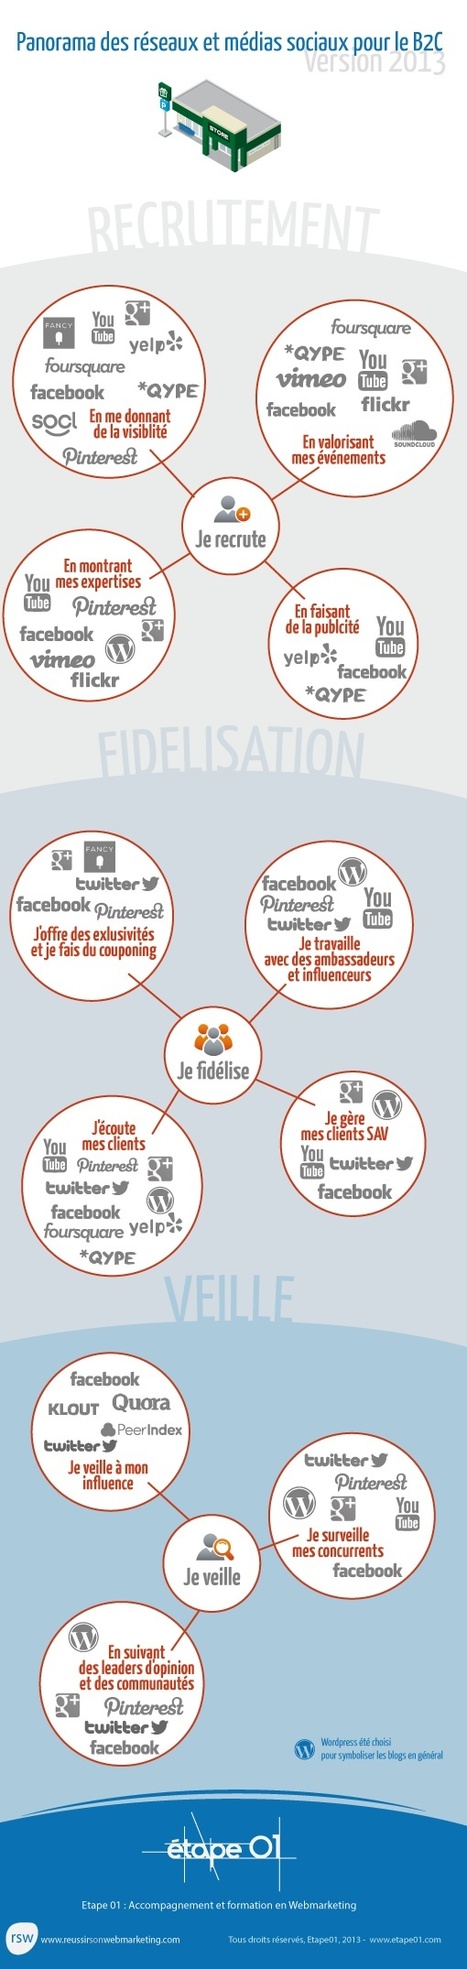 Panorama des réseaux sociaux 2013 pour le B2C | e-Social + AI DL IoT | Scoop.it